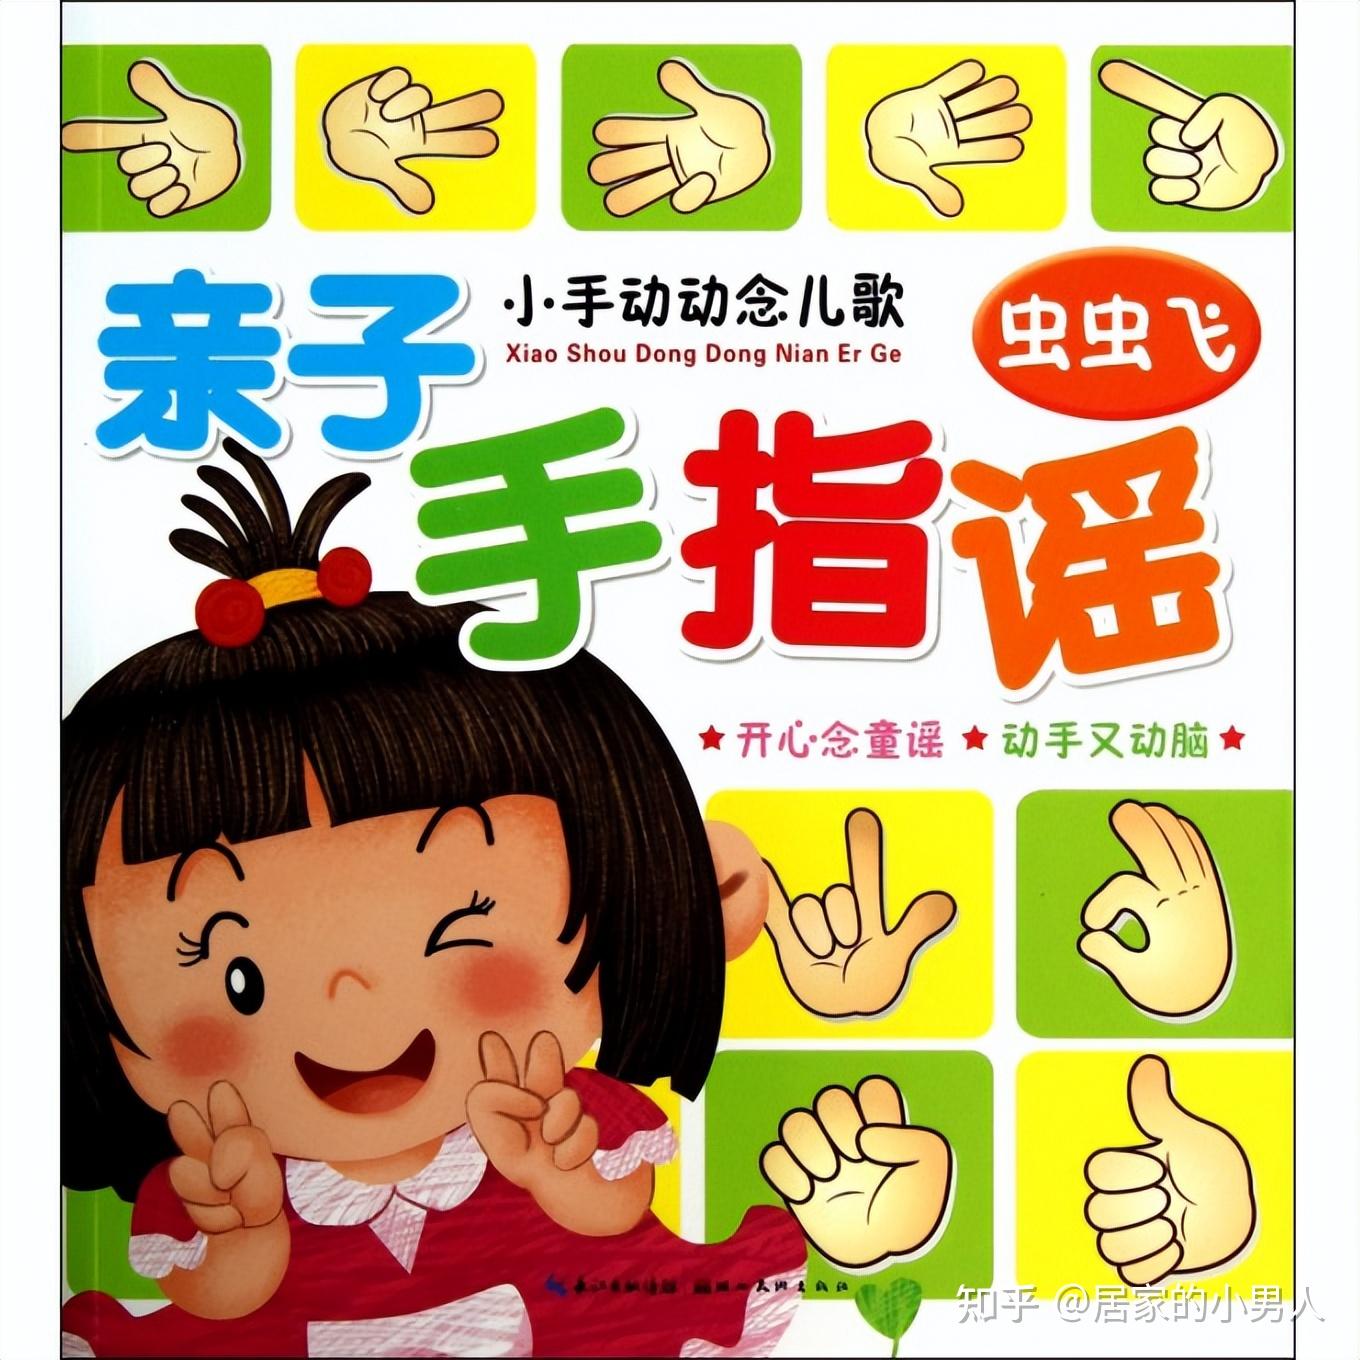 双手交叉学蝴蝶飞,同时说:「五个手指飞飞飞」四个手指学螃蟹在宝宝的